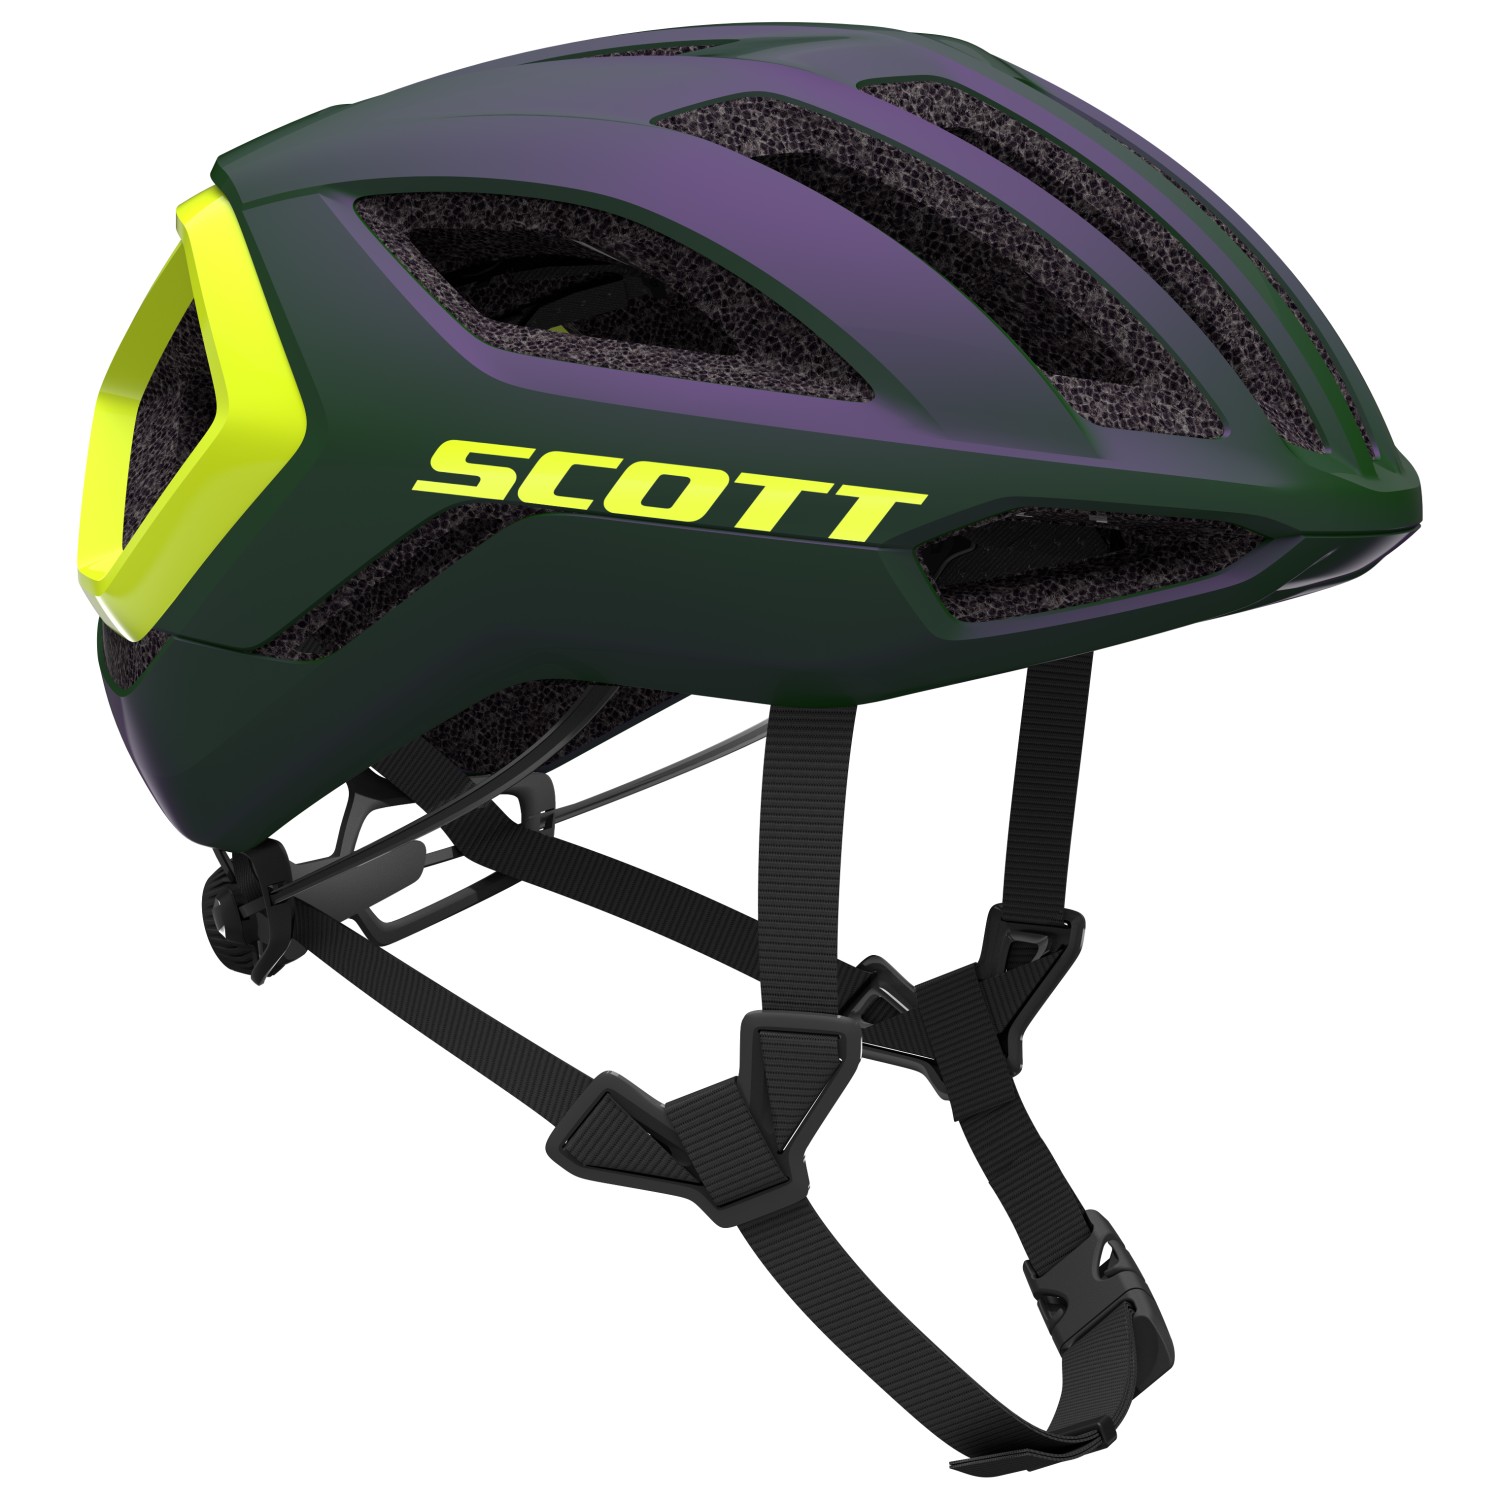 велосипедный шлем scott helmet arx plus ce цвет prism green purple Велосипедный шлем Scott Helmet Centric Plus (CE), цвет Prism Green/Radium Yellow